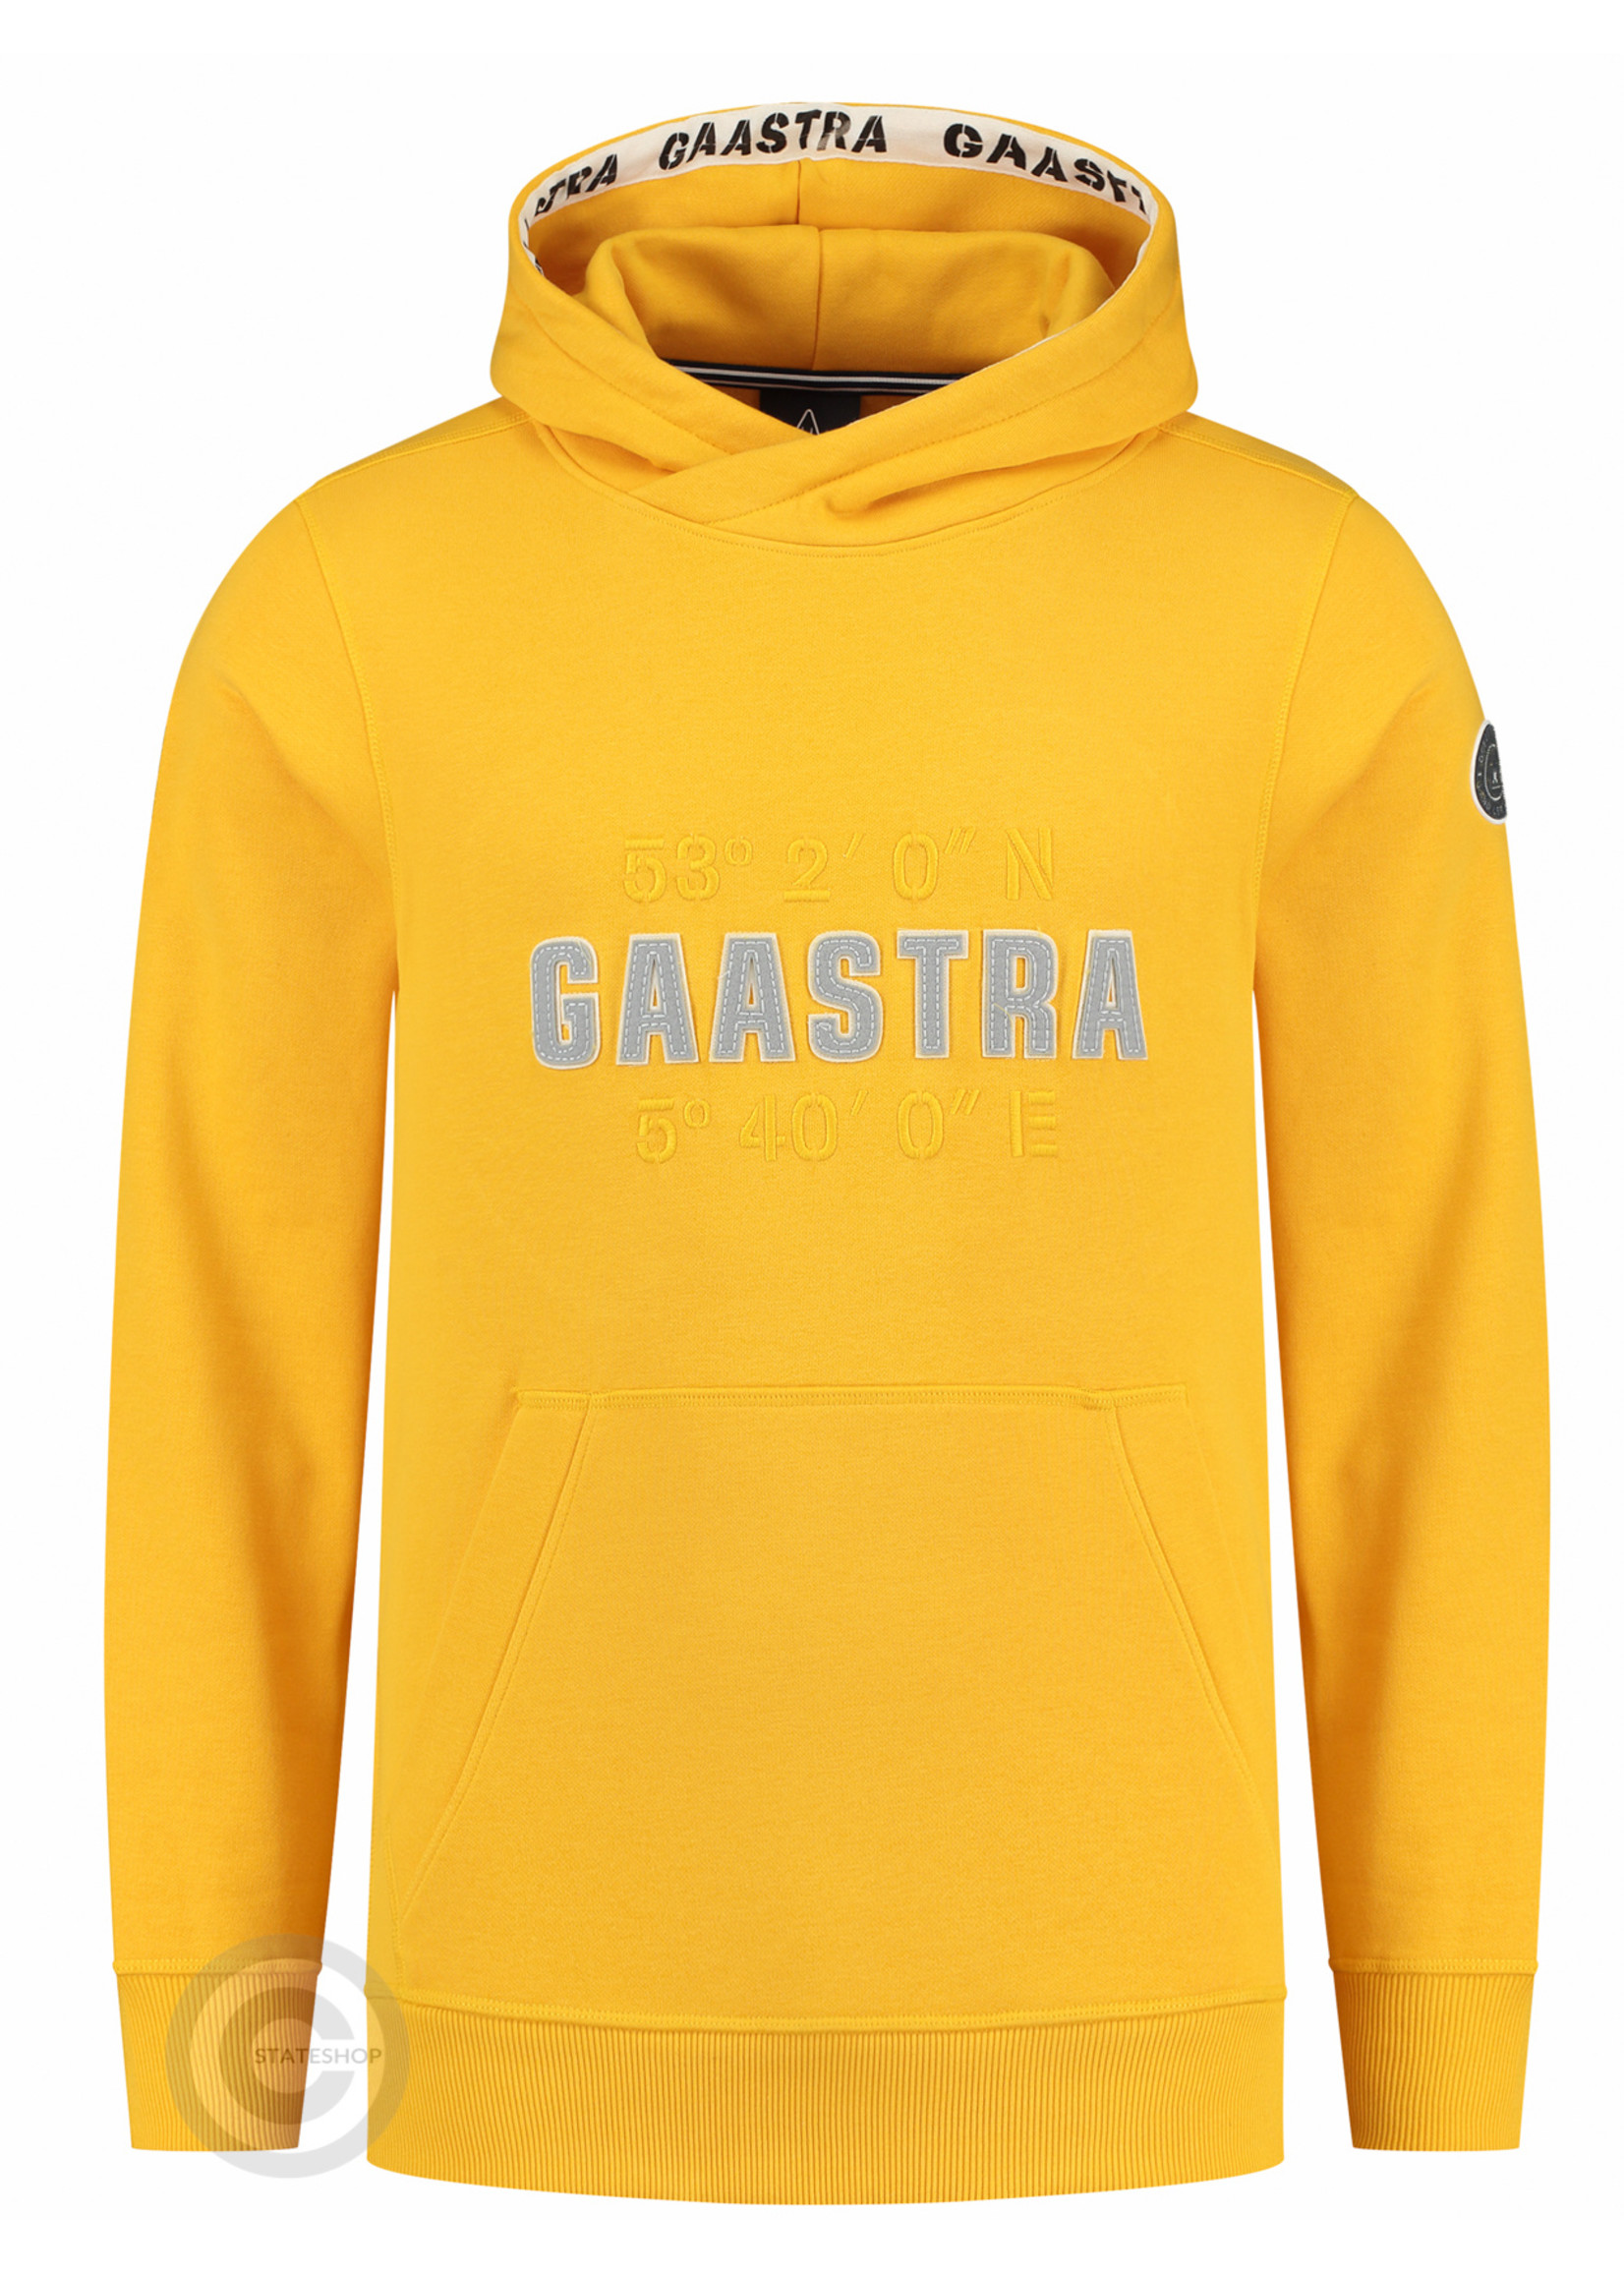 Gaastra Gaastra heren hoodie sweater "Artic", geel